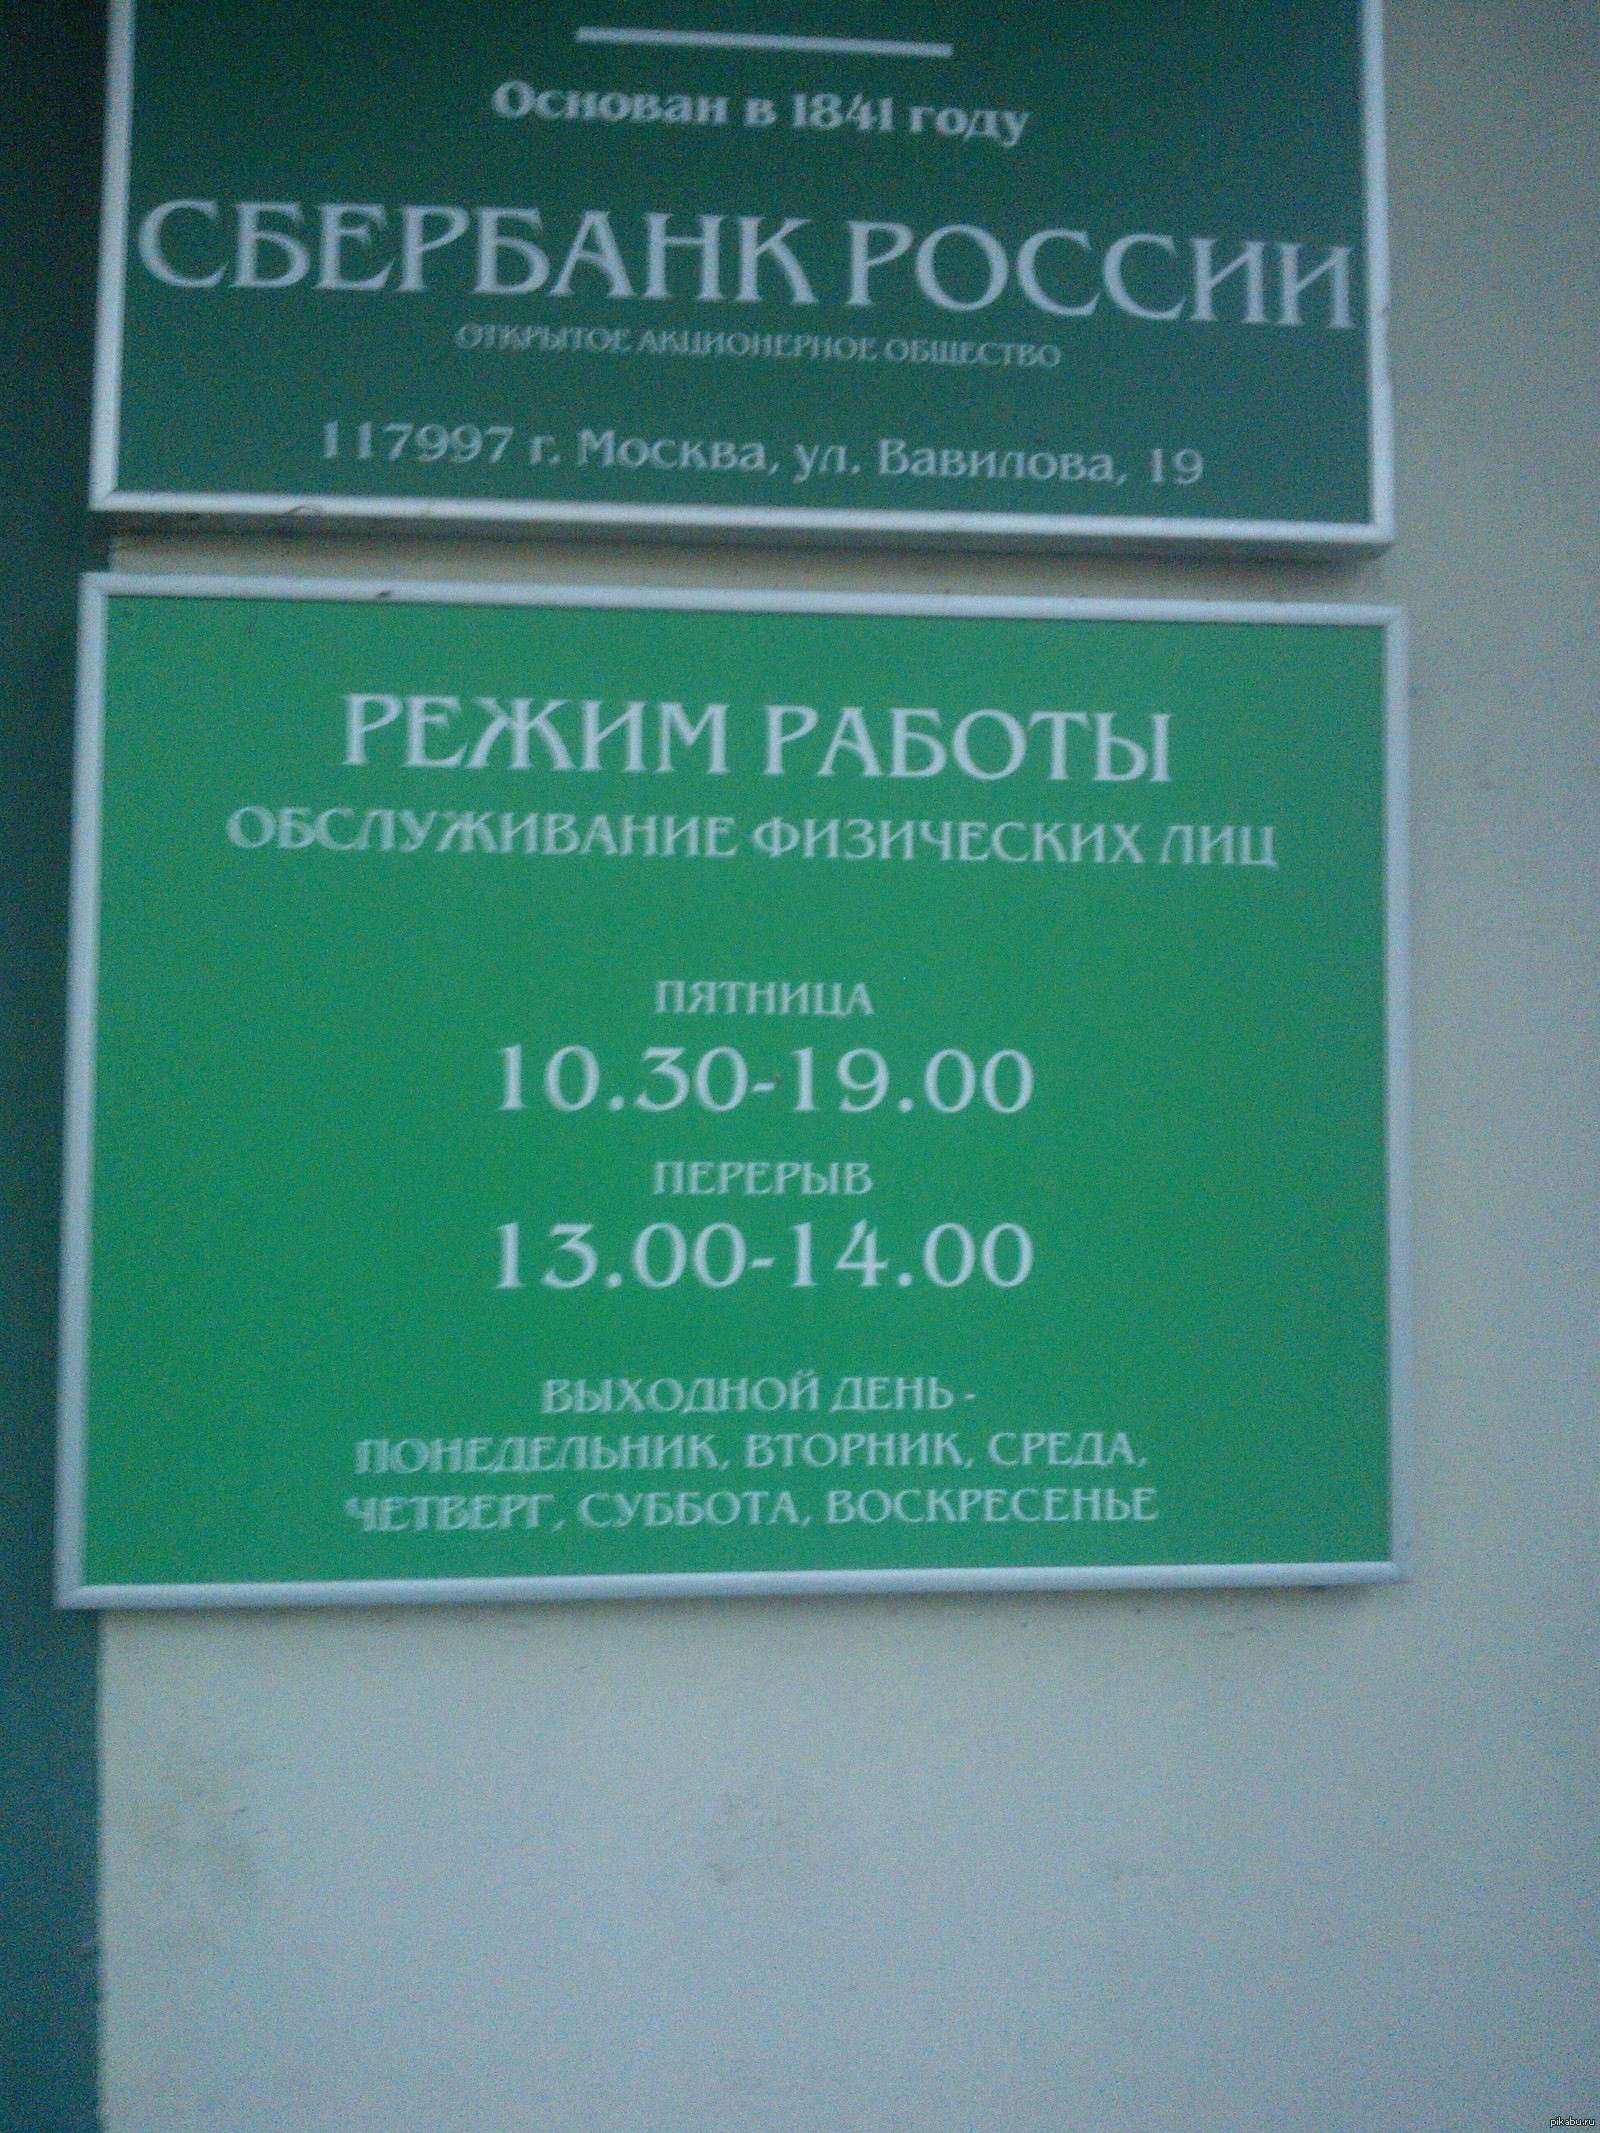 Часы работы сбербанка в субботу в москве